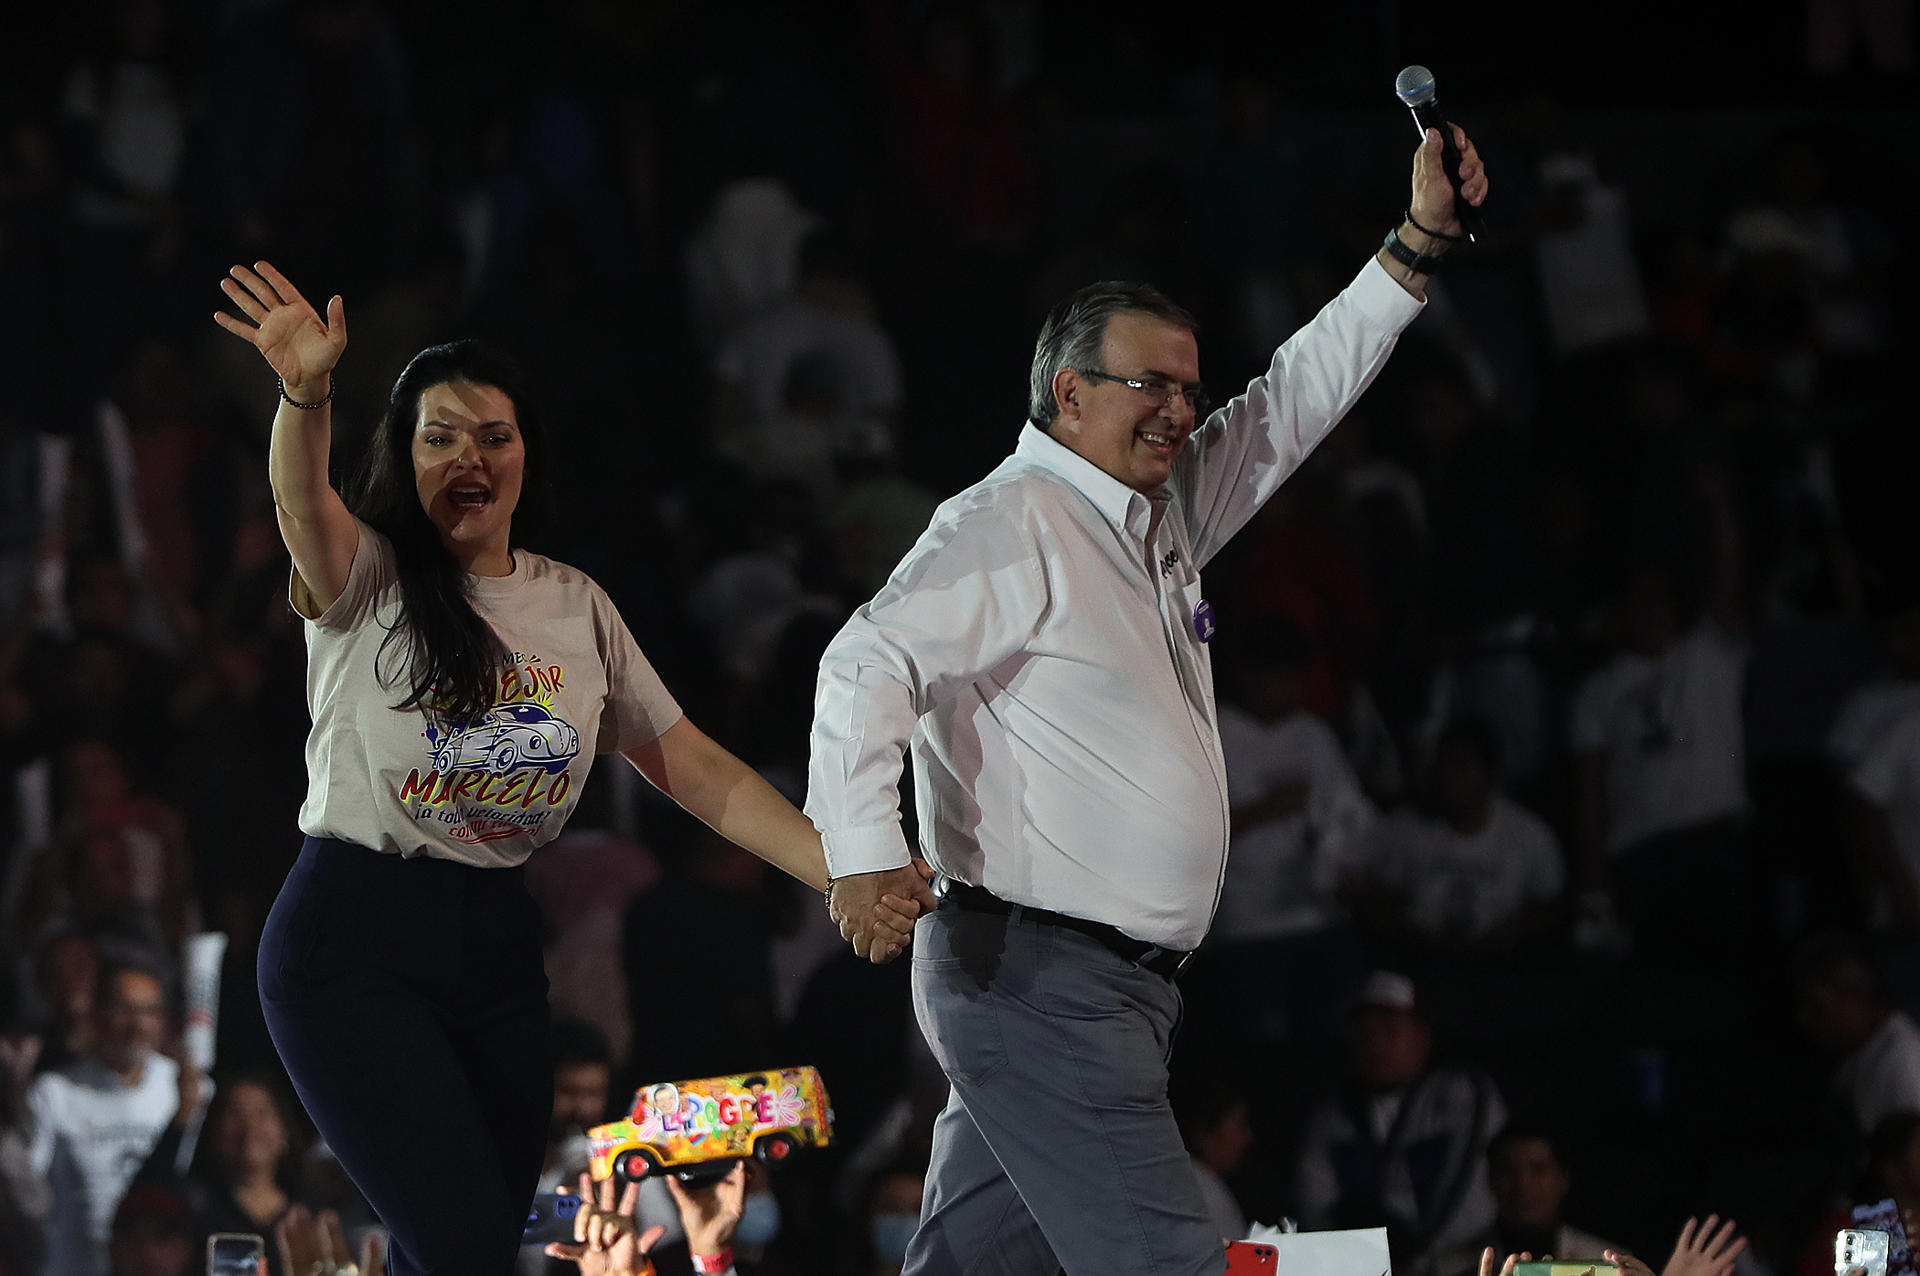 El excanciller mexicano y candidato presidencial del oficialismo Marcelo Ebrard y su esposa Rosalinda Bueso saludan durante el cierre de gira política, hoy, en La Arena de Ciudad de México (México). EFE/Mario Guzmán